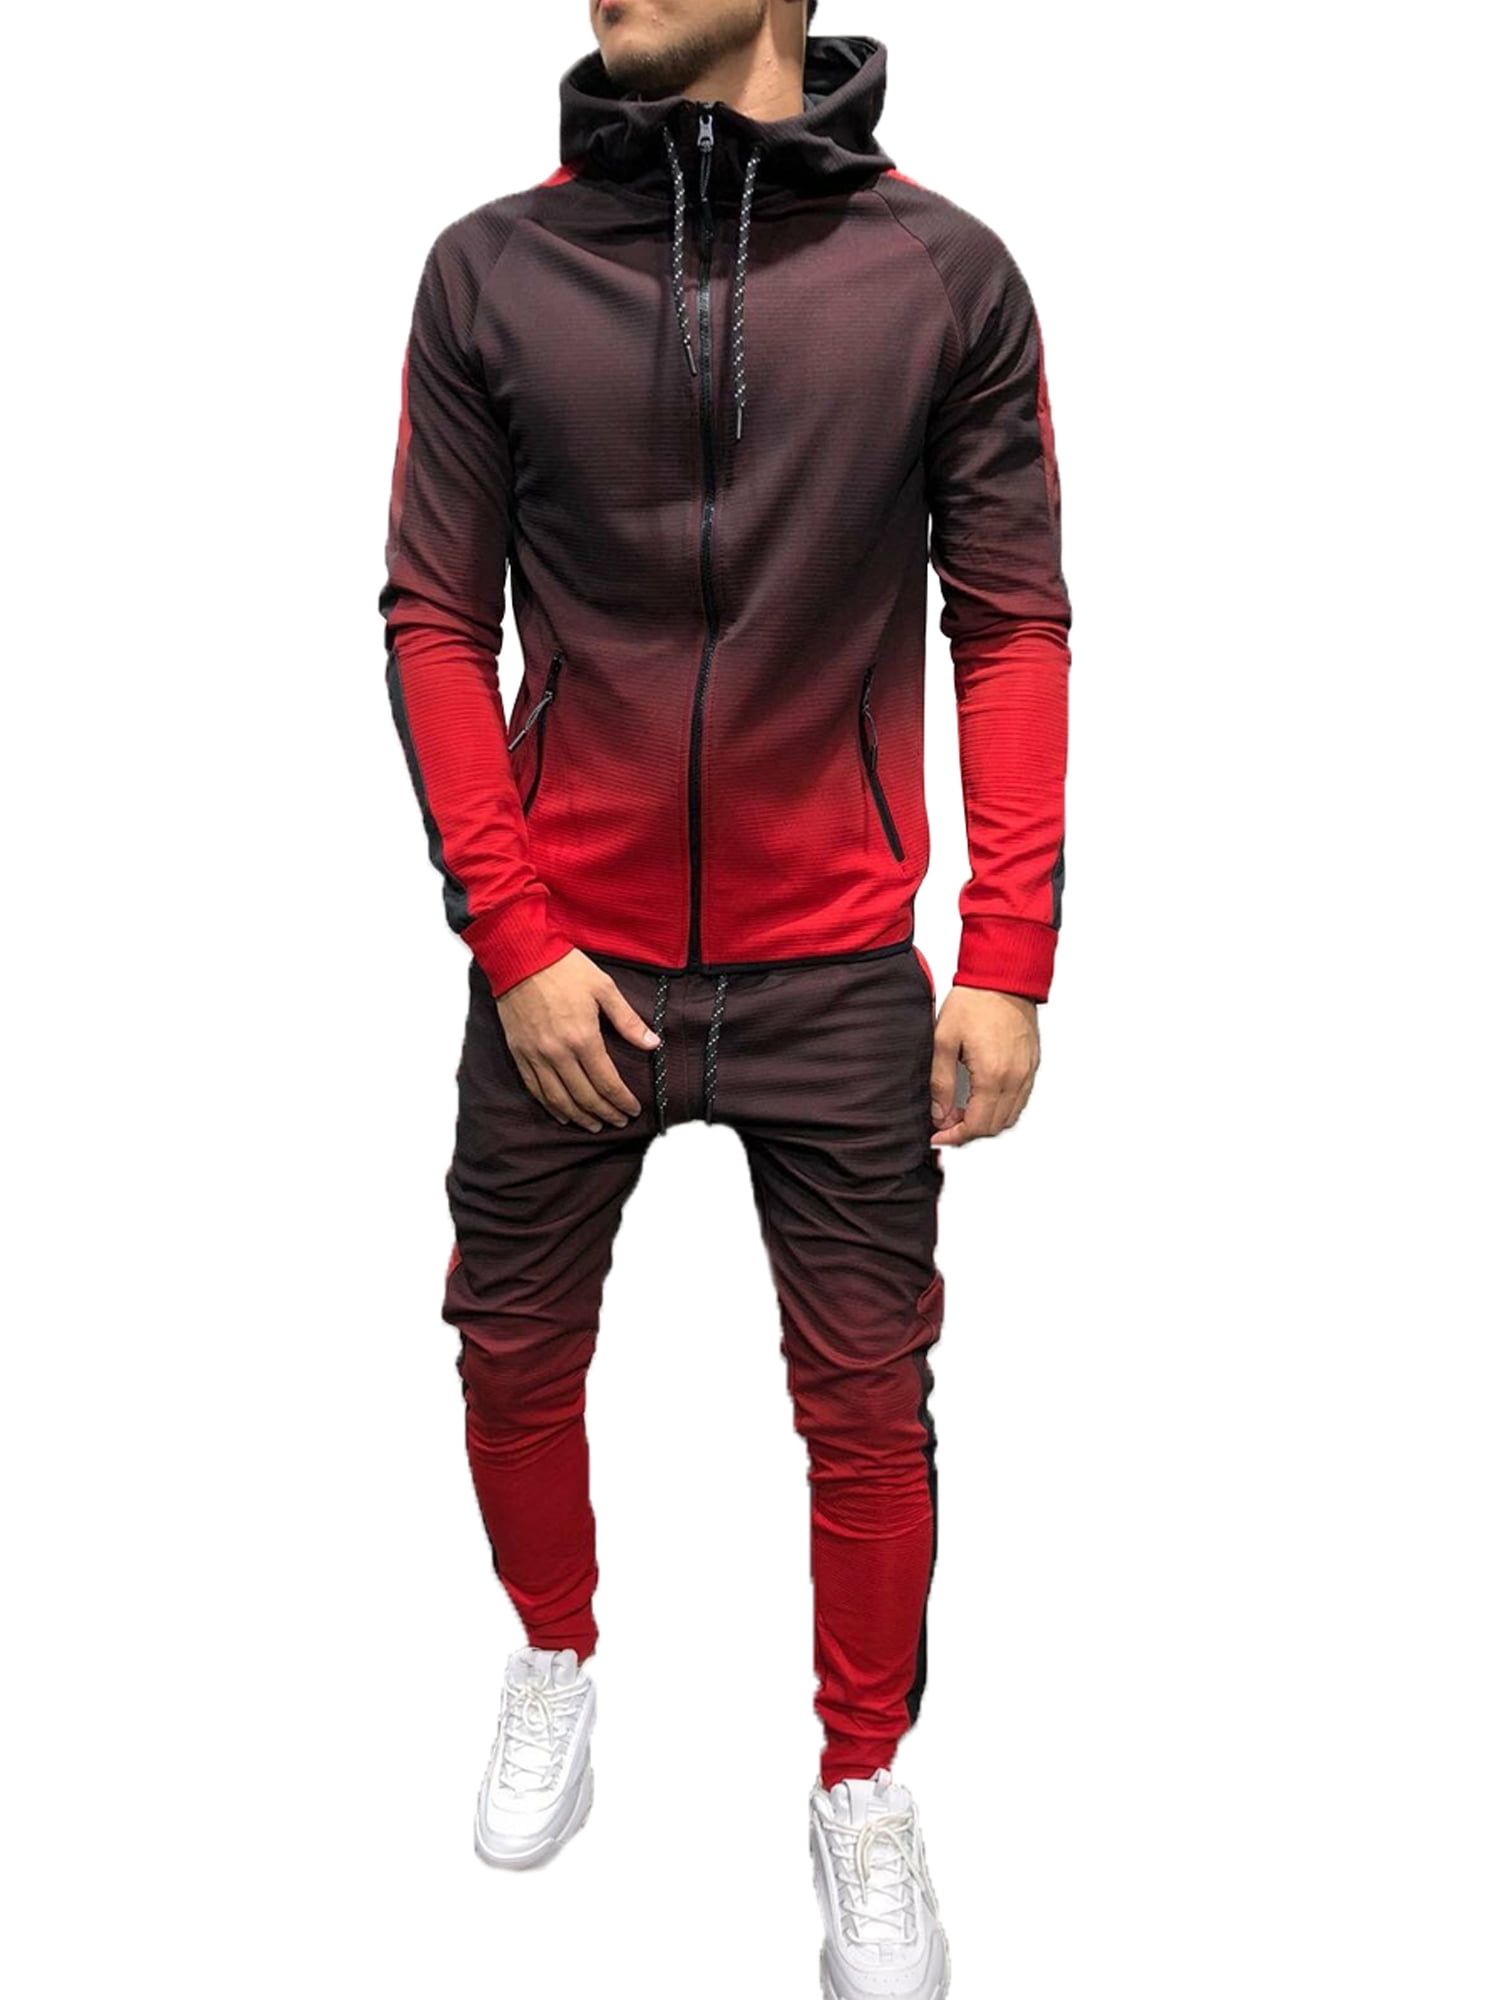 Pants Sweatsuit Outfit Set X-Future Mens Gym Hooded 2 Piece Stud Jogging Zipper Athletic Coat